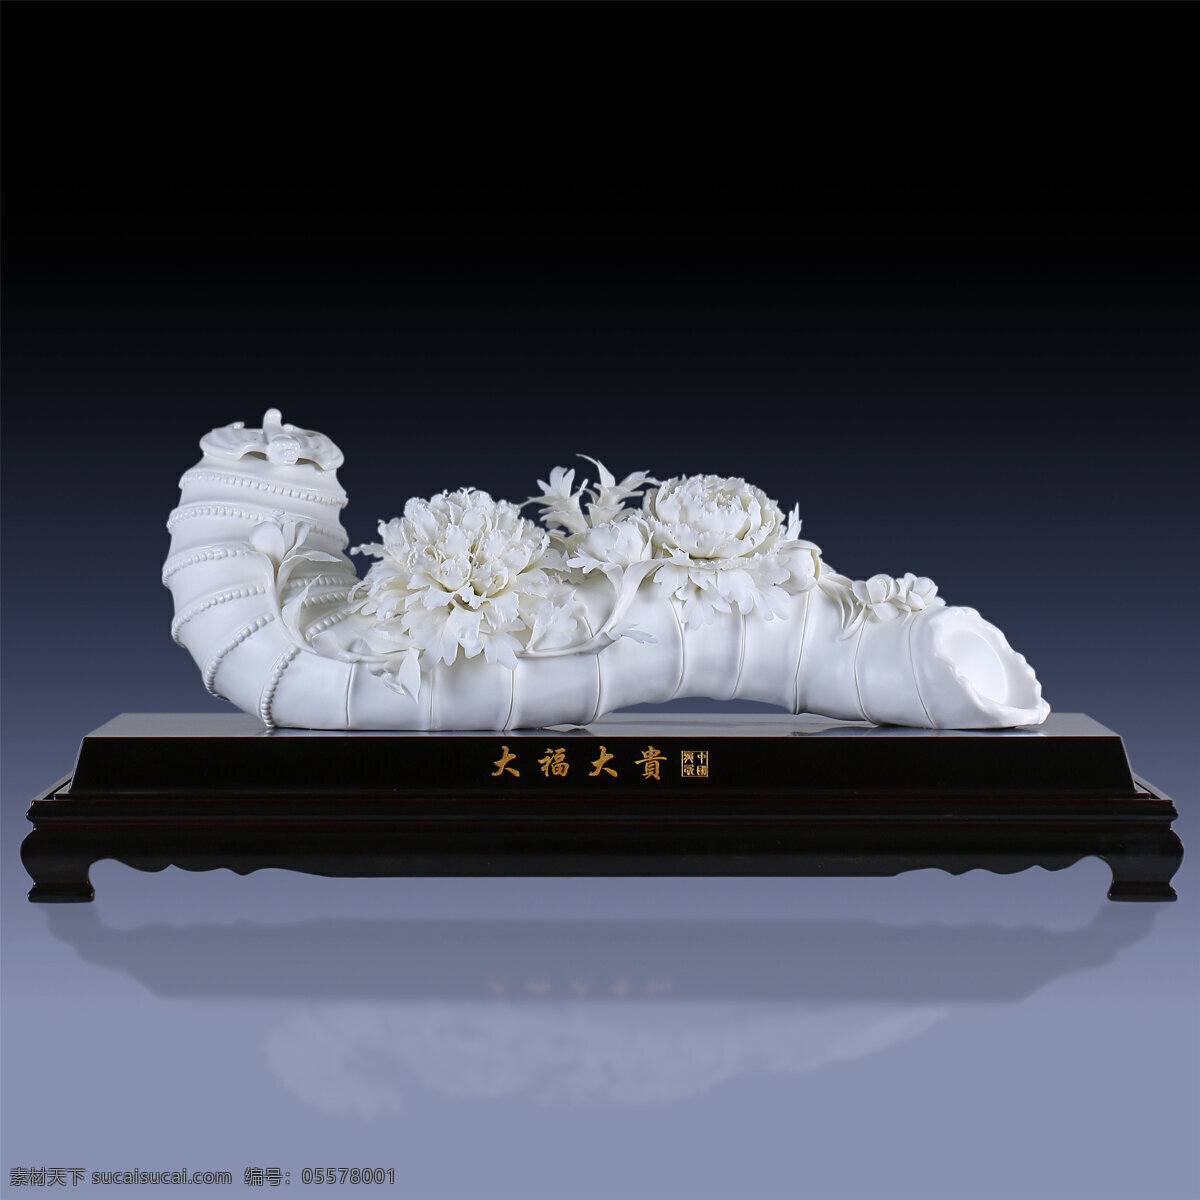 德化陶瓷 陶瓷 瓷花艺术 中国白 德化白瓷 纯手工 文化艺术 传统文化